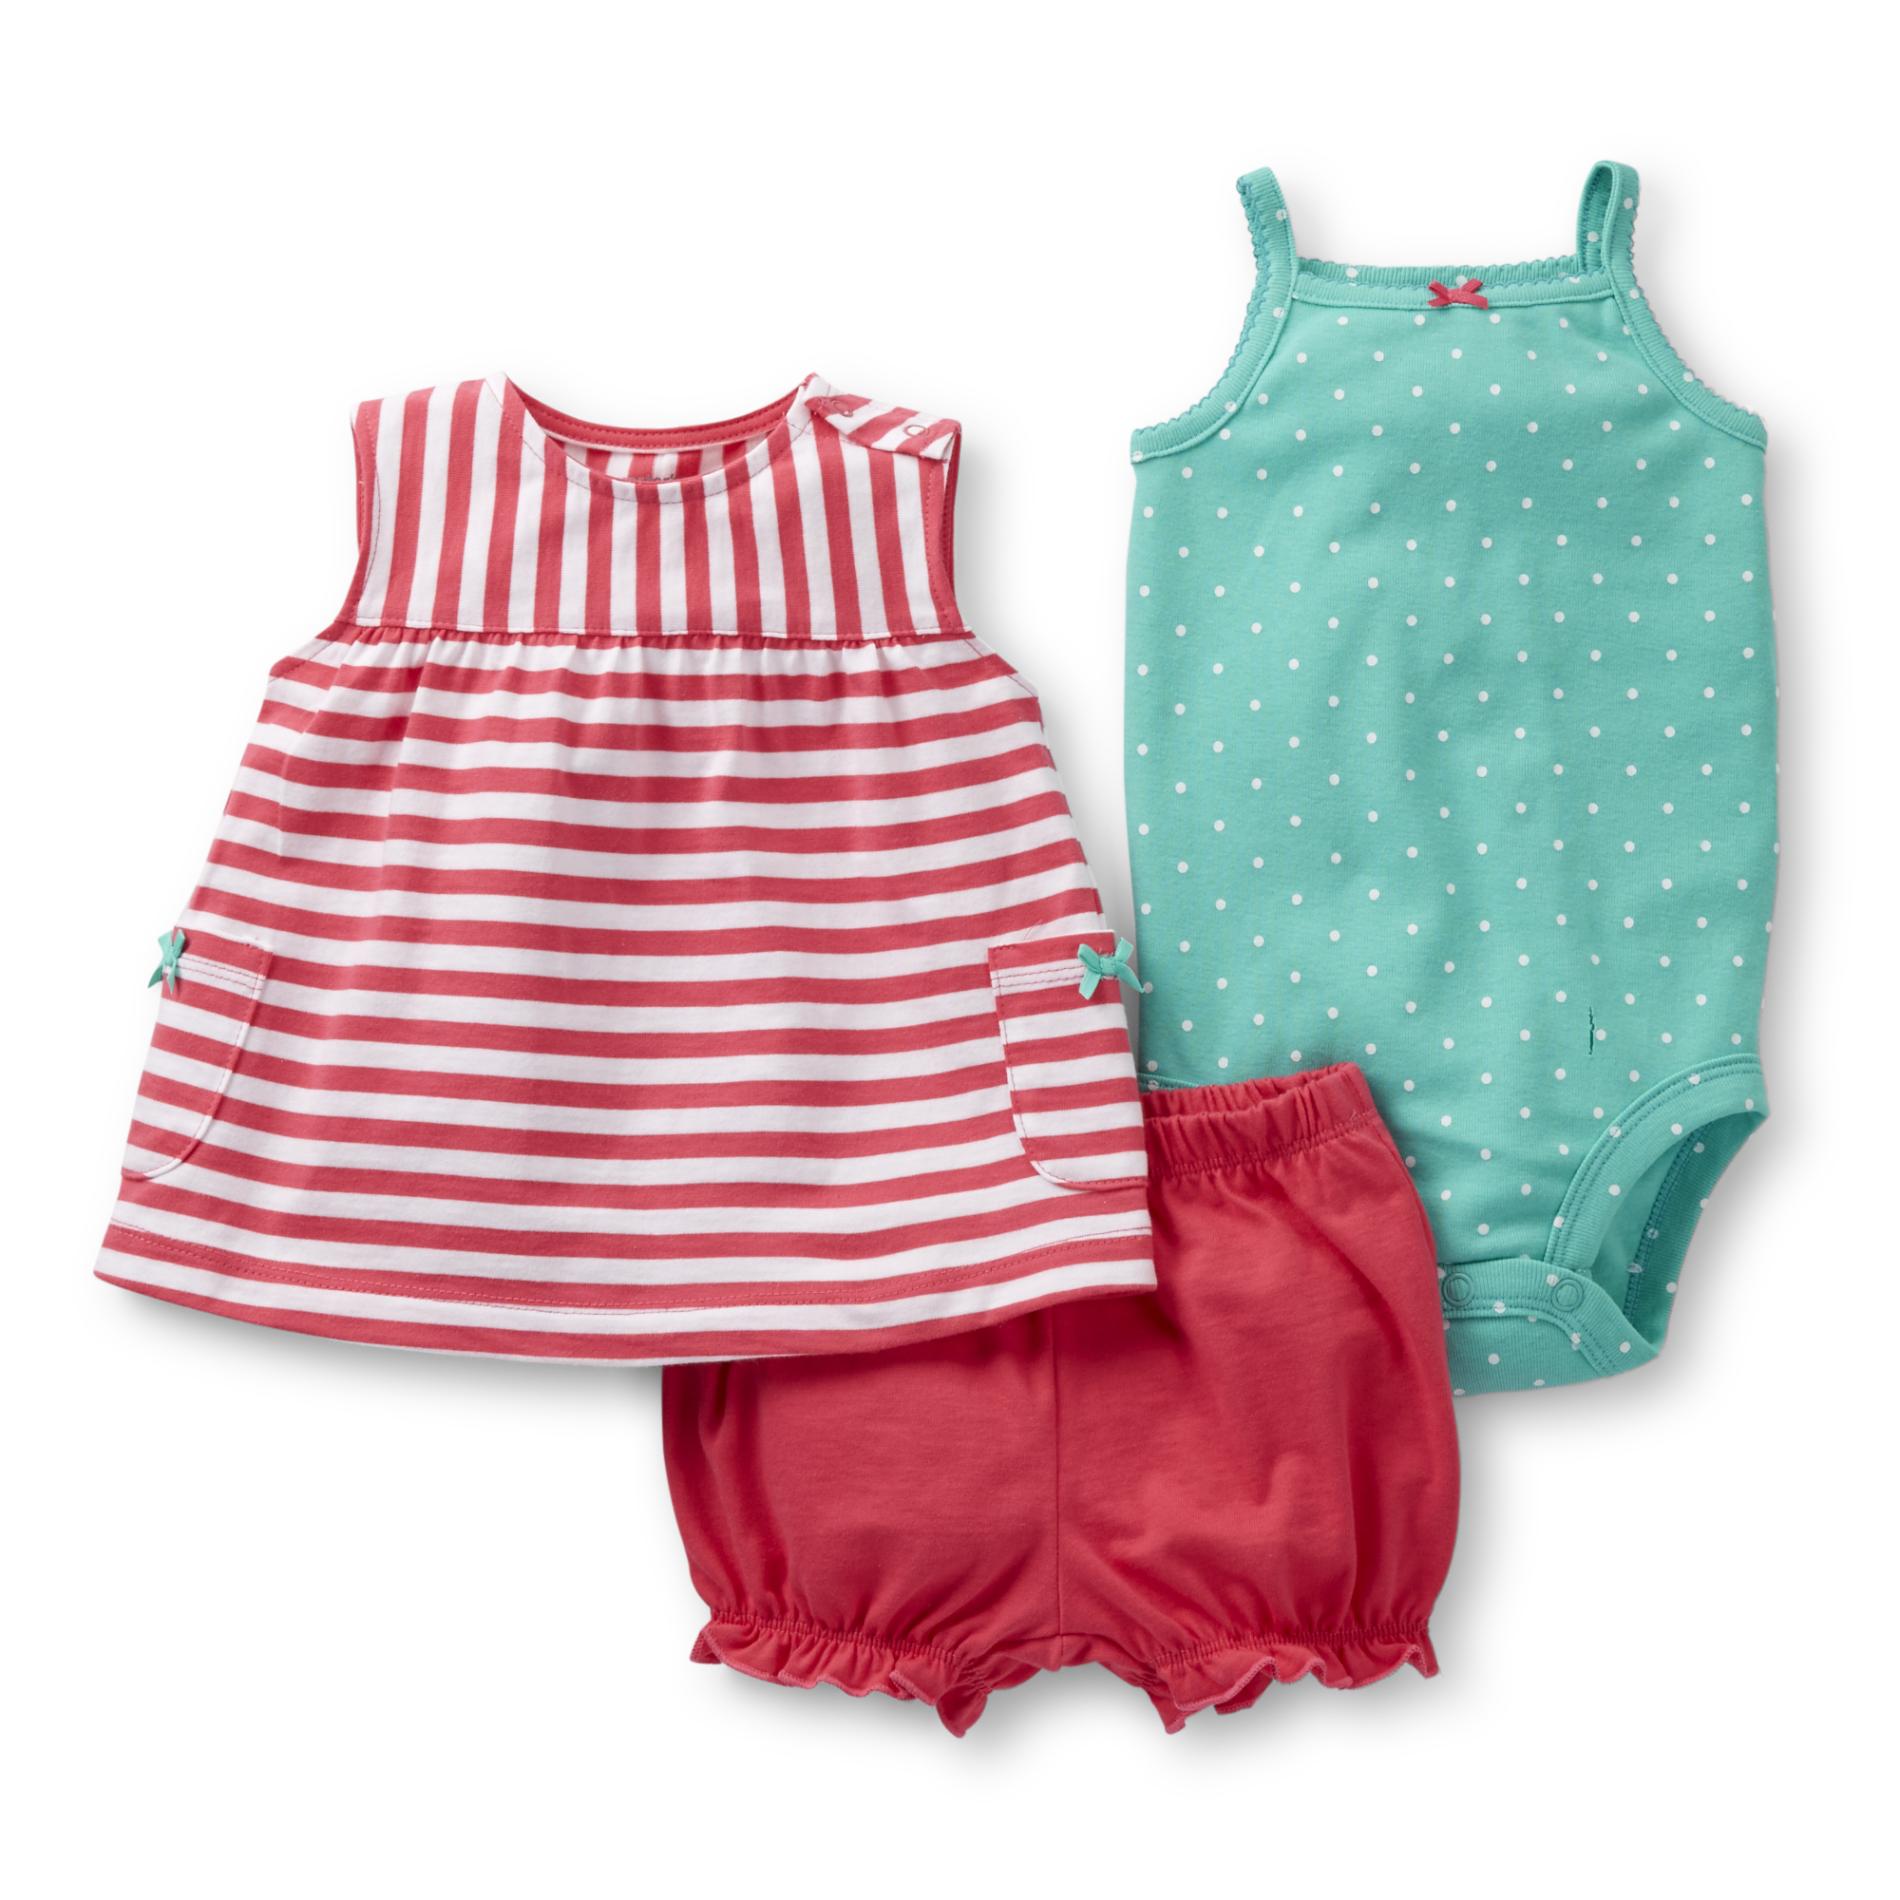 Carter's Newborn & Infant Girl's Dress  Bodysuit & Diaper Cover - Striped